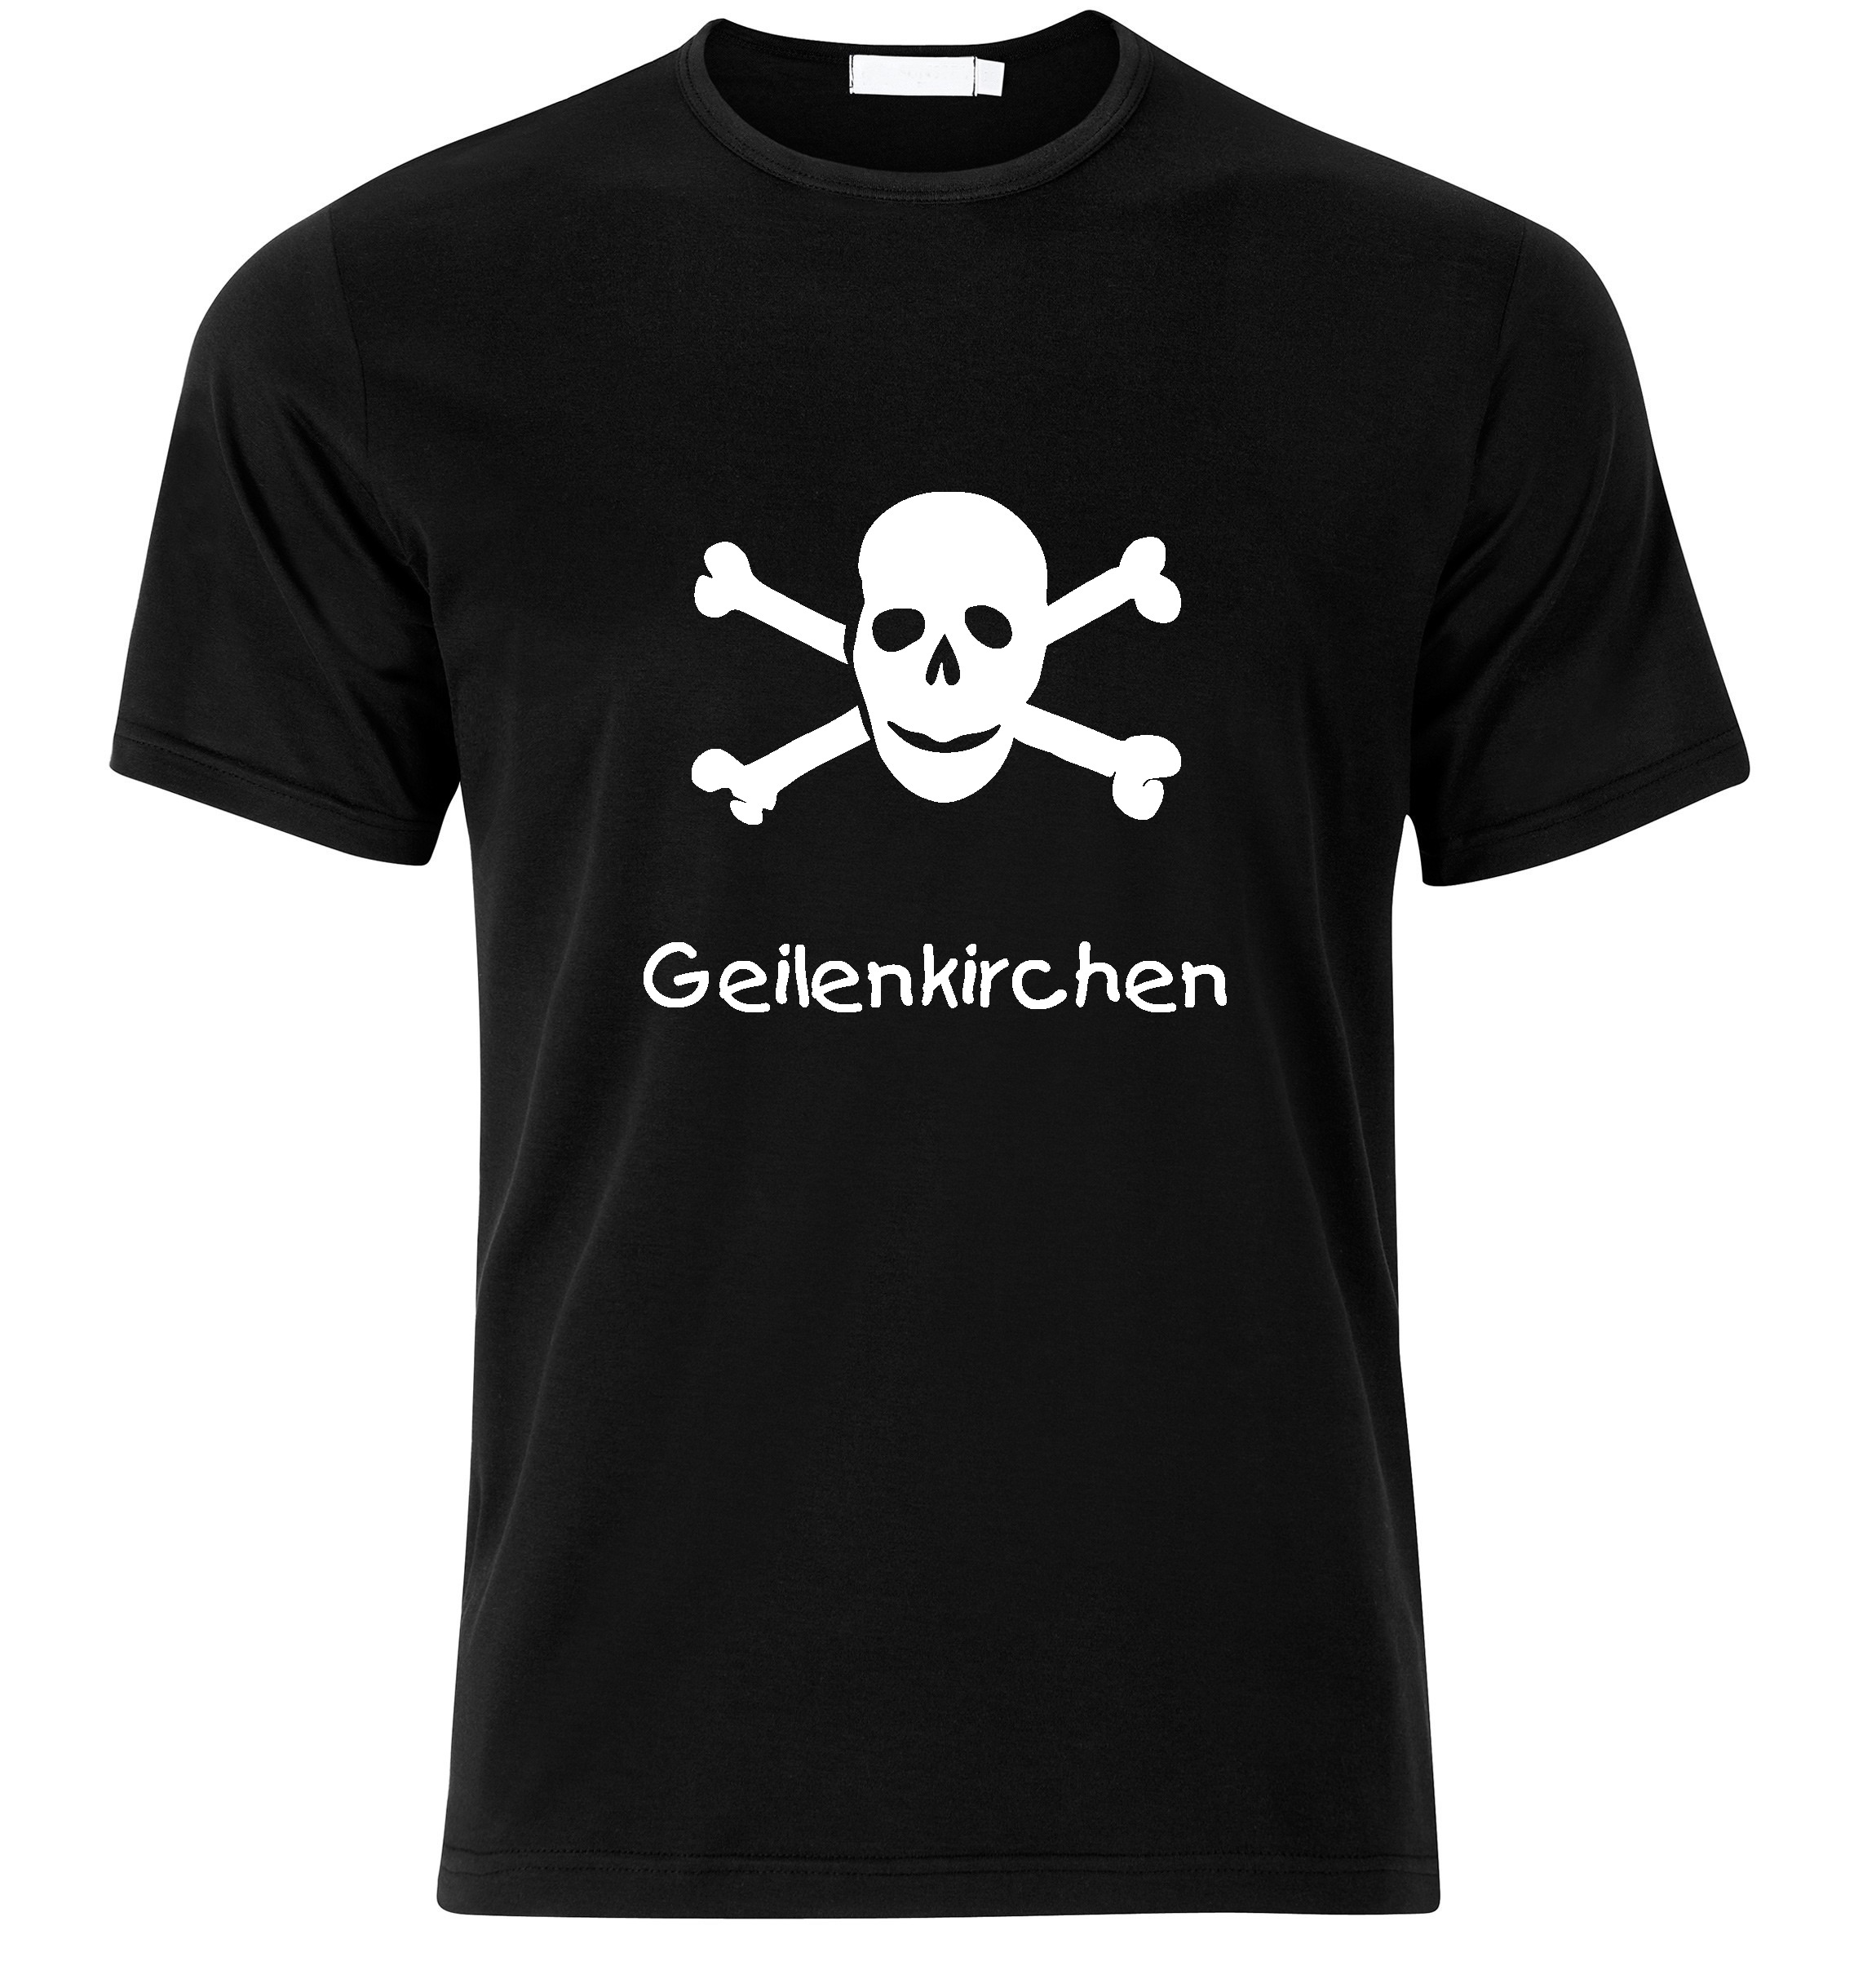 T-Shirt Geilenkirchen Jolly Roger, Totenkopf